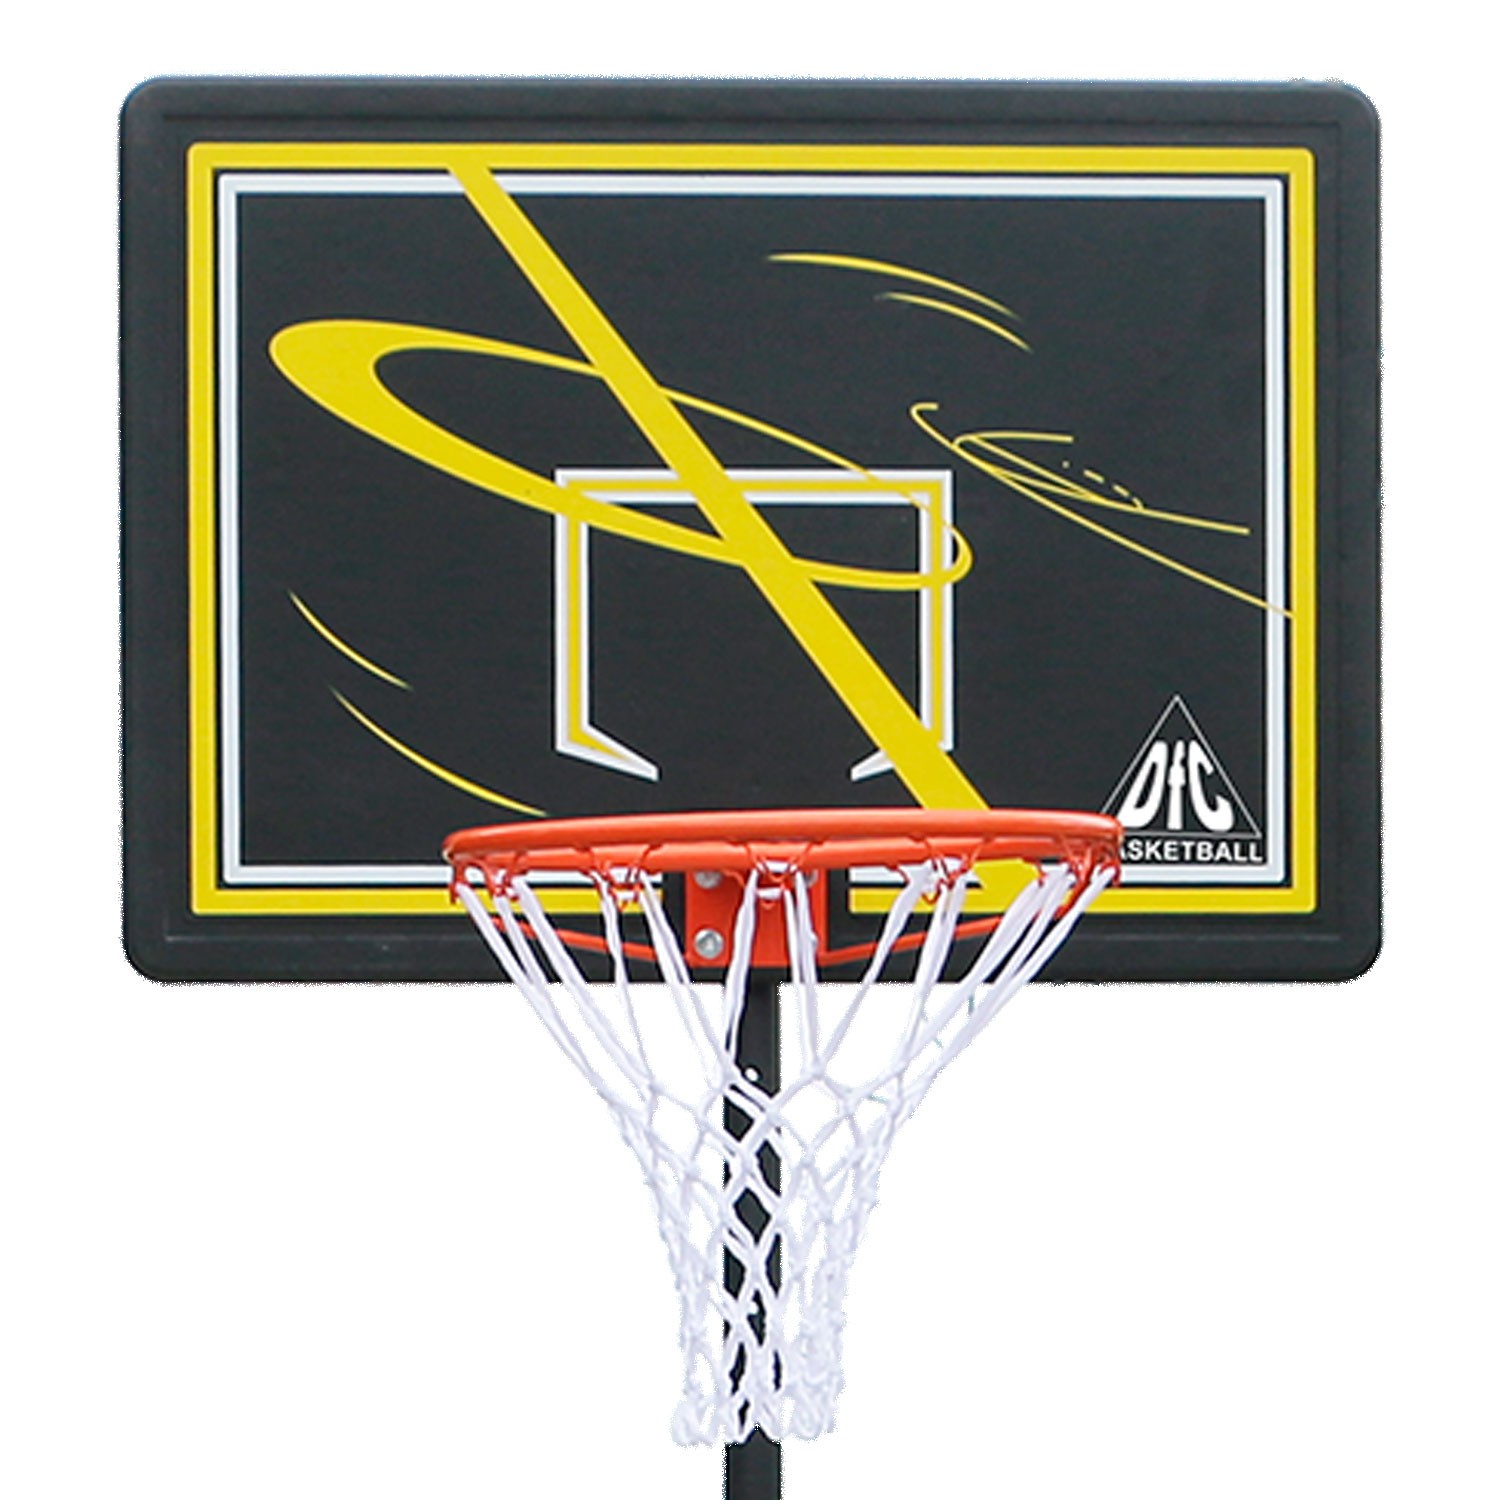 Мобильная баскетбольная стойка DFC 80x58см п/э KIDSD2, изображение 2